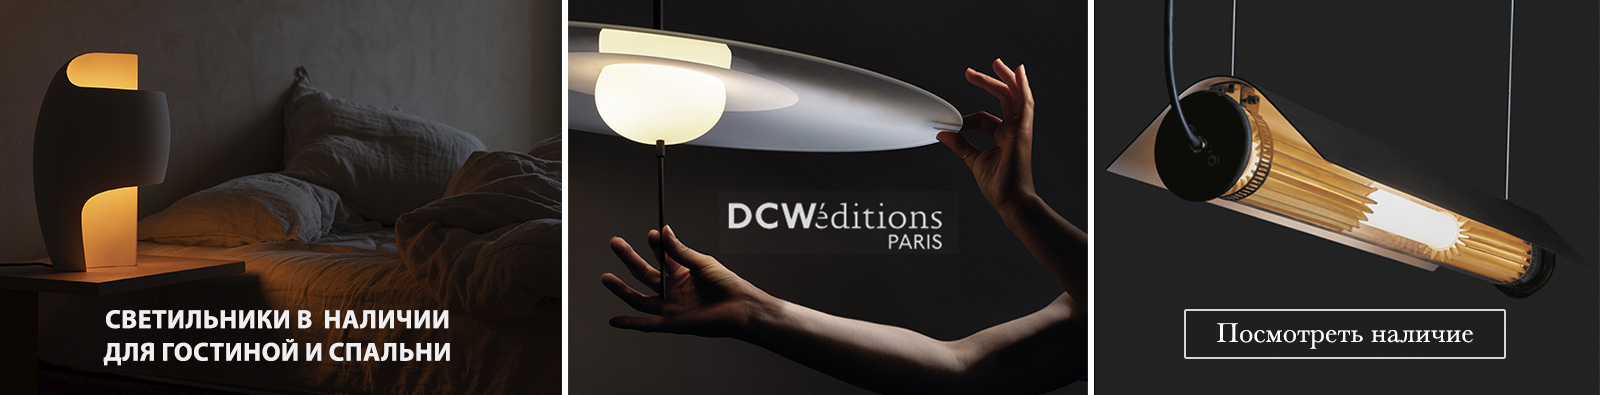 Купить современные светильники и лампы DCW Editions в наличии. Стильный свет для гостиной и спальни